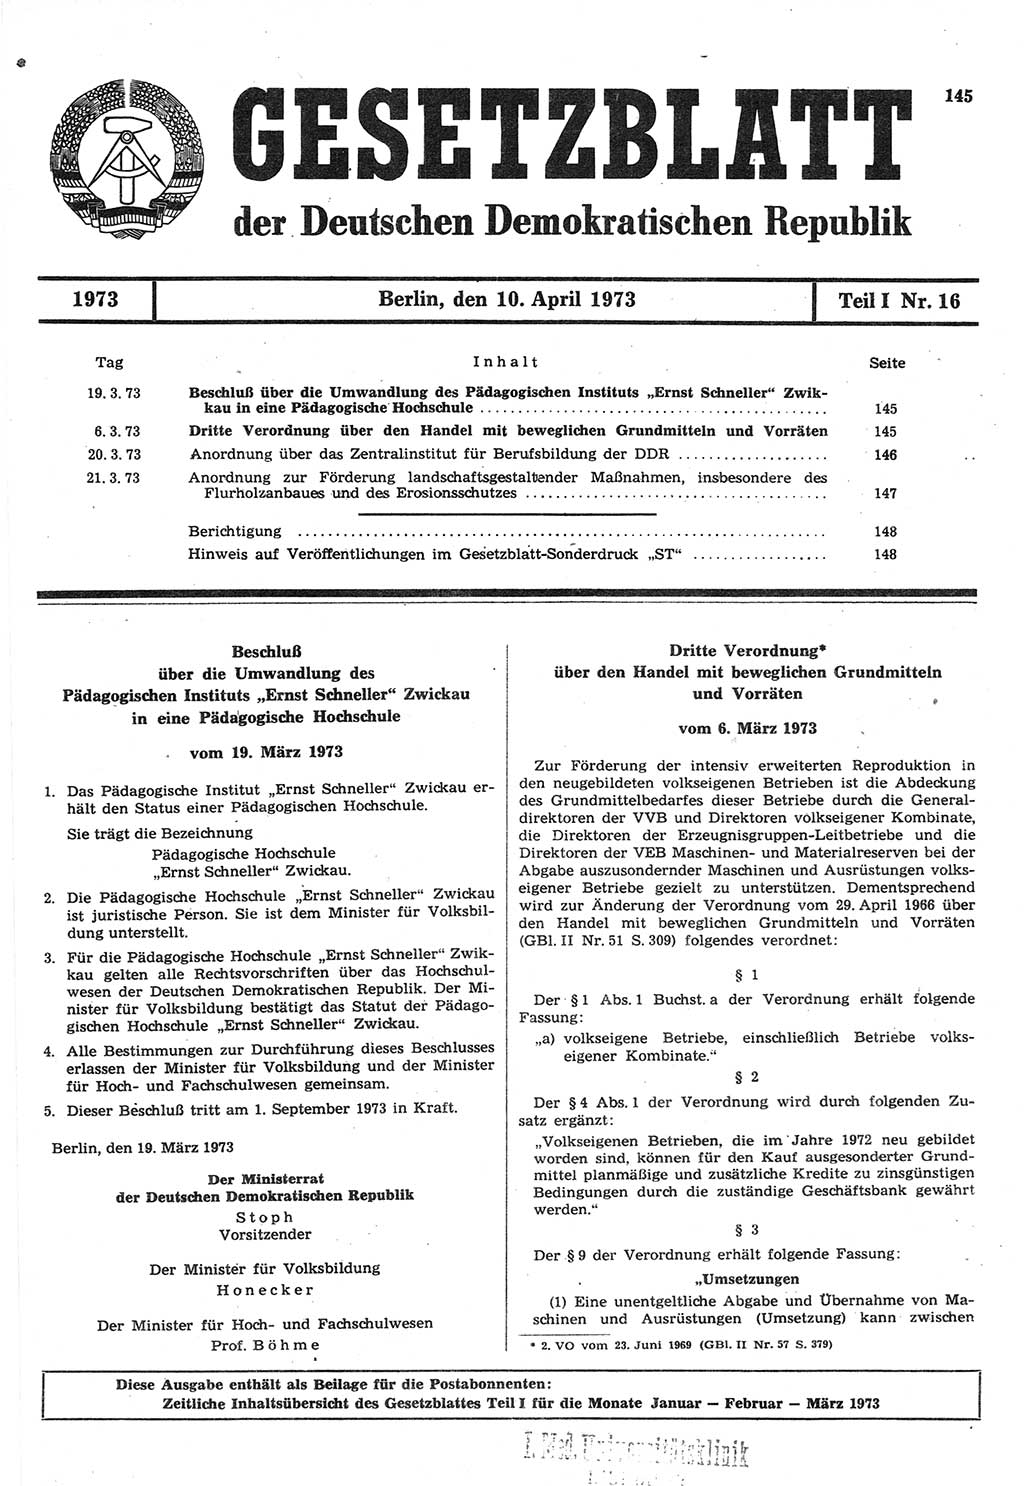 Gesetzblatt (GBl.) der Deutschen Demokratischen Republik (DDR) Teil Ⅰ 1973, Seite 145 (GBl. DDR Ⅰ 1973, S. 145)